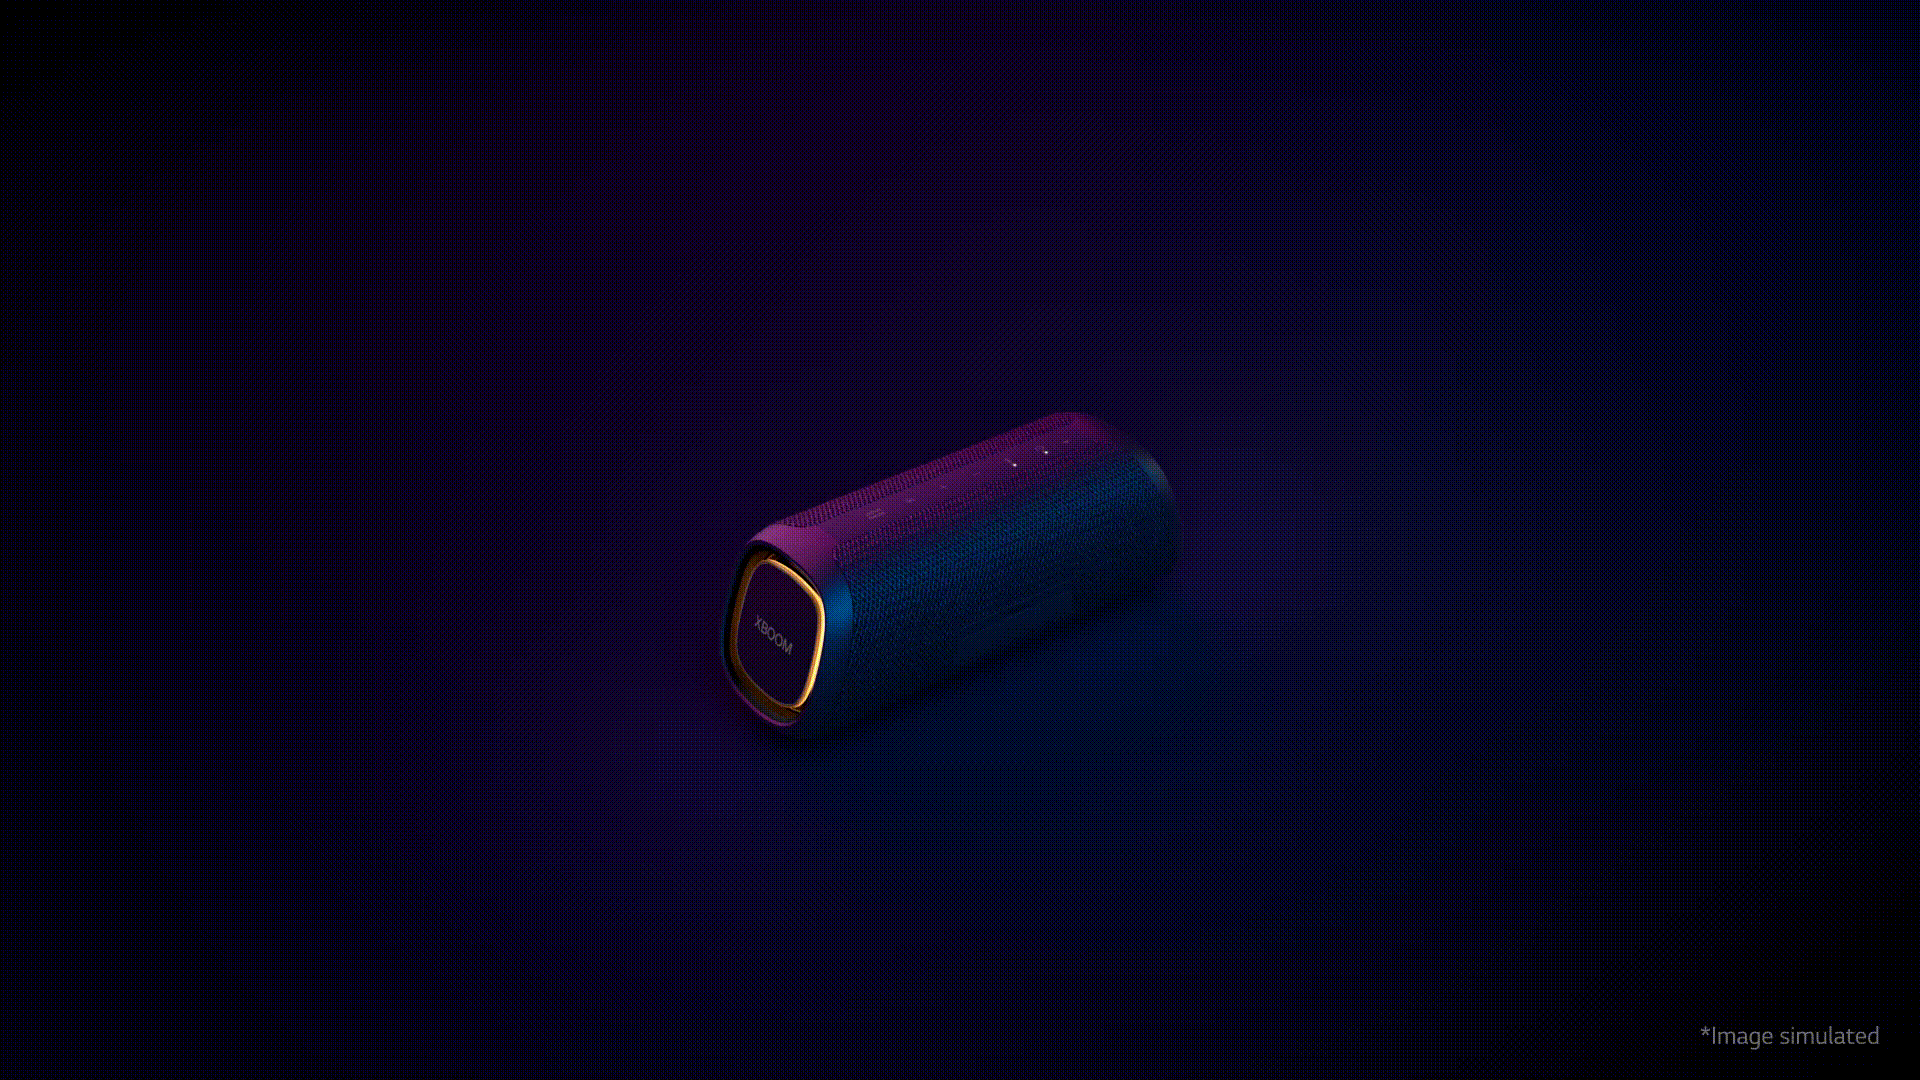 Video trazendo os principais detalhes da XBOOM Go, como suas cores violeta e azul e seus botões de operação